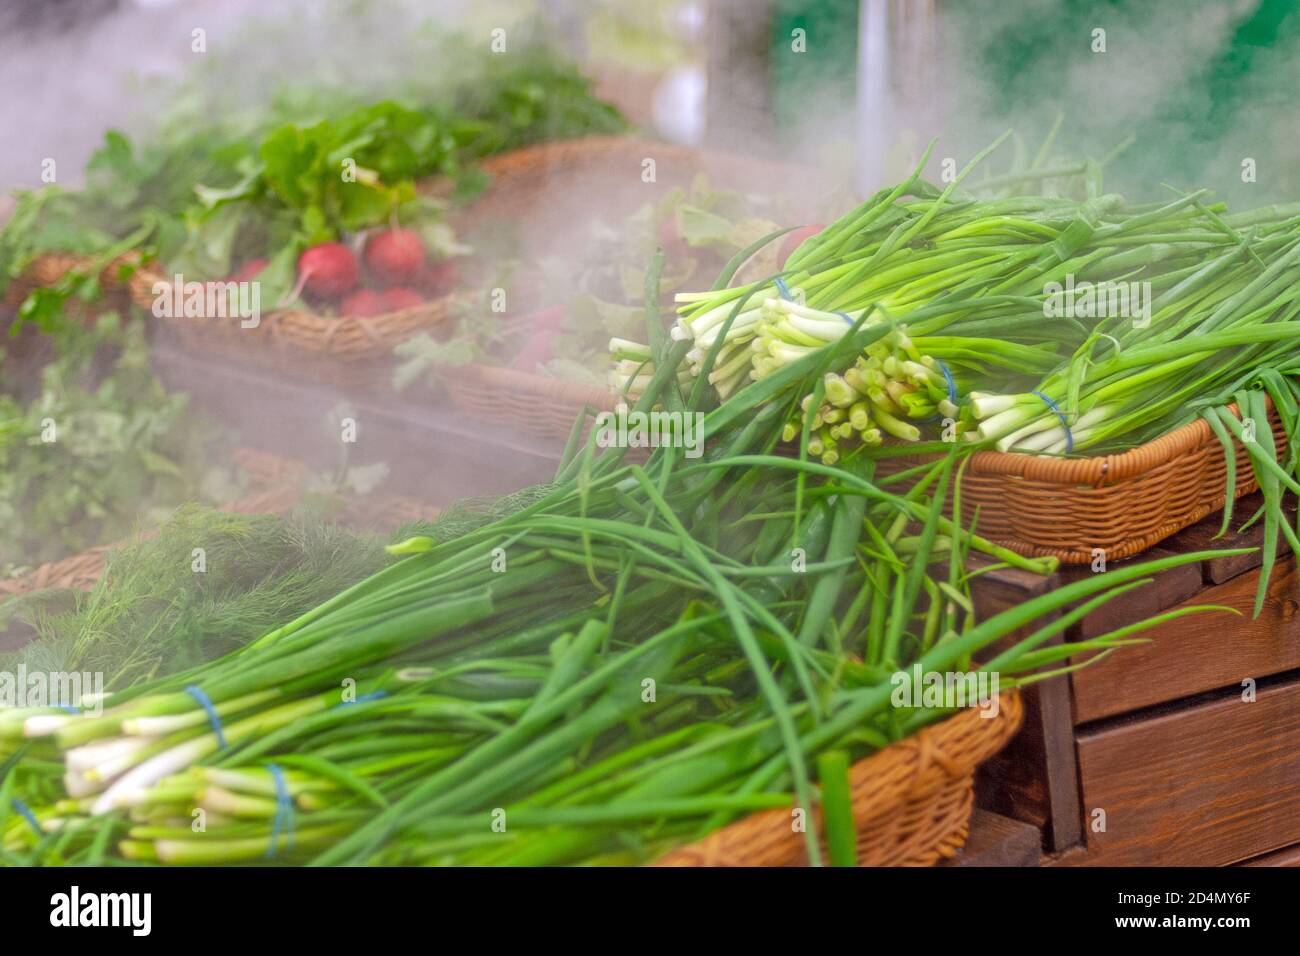 greens im Supermarkt verkauft, halten Gemüse frisch mit Luftbefeuchter Stockfoto